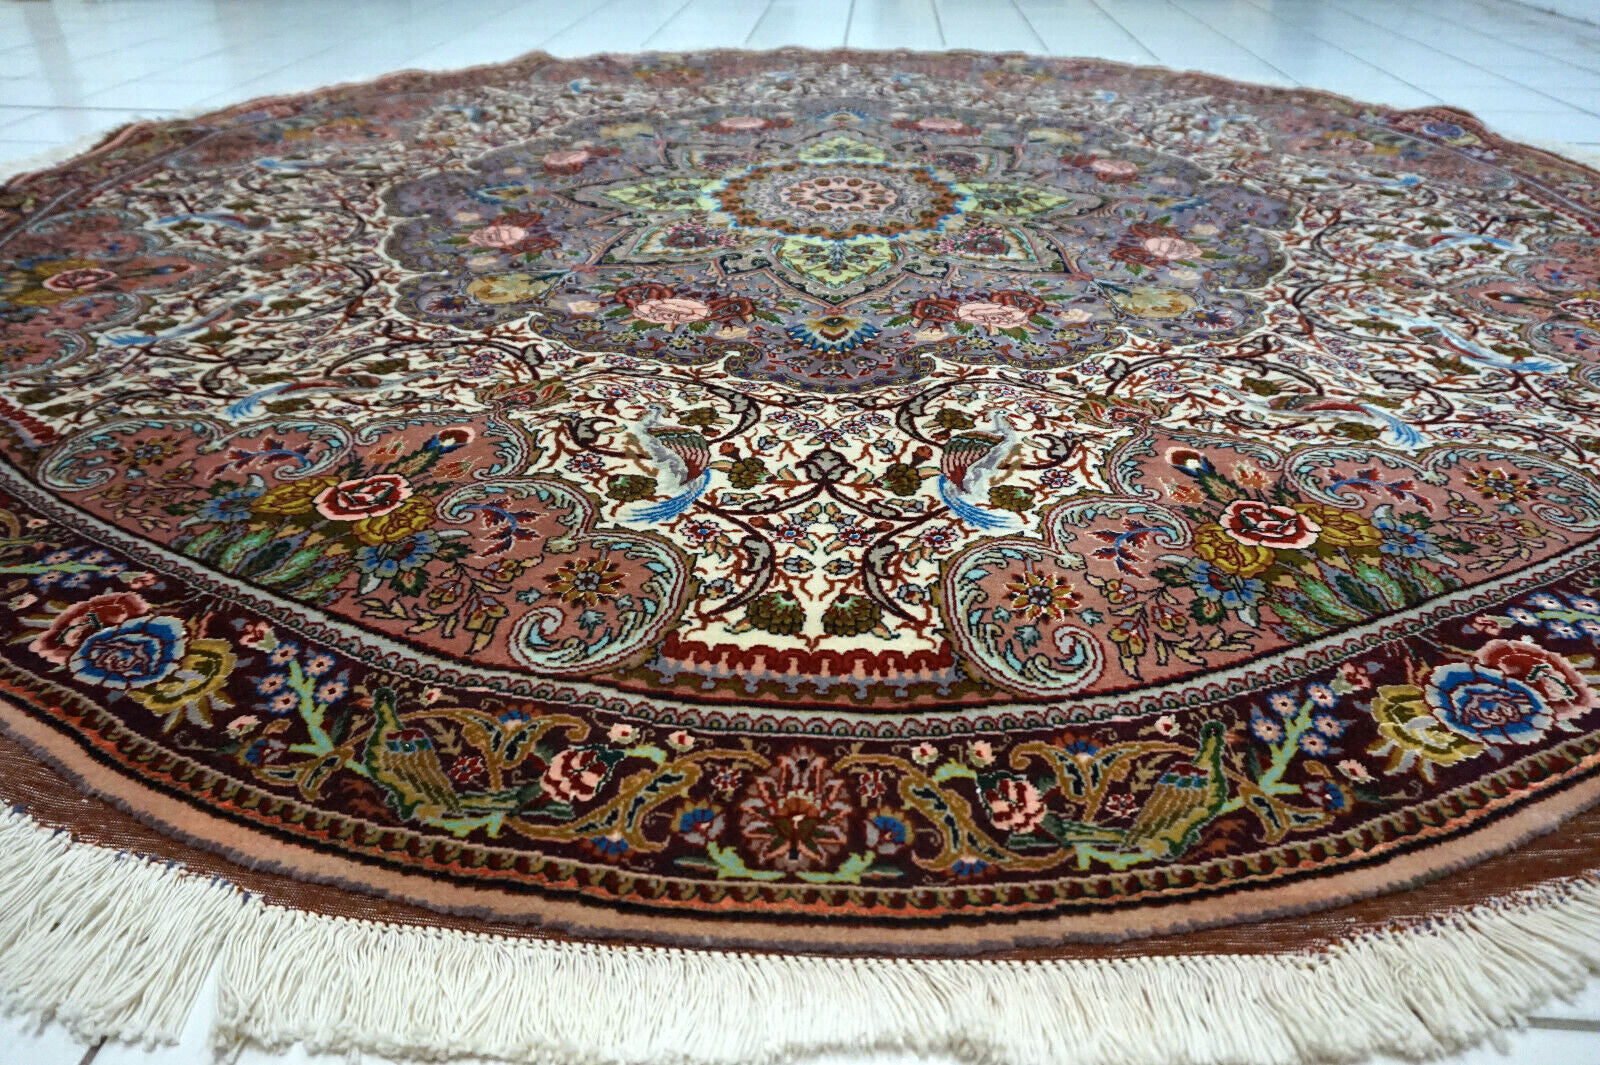 Intricate floral design of Tabriz rug